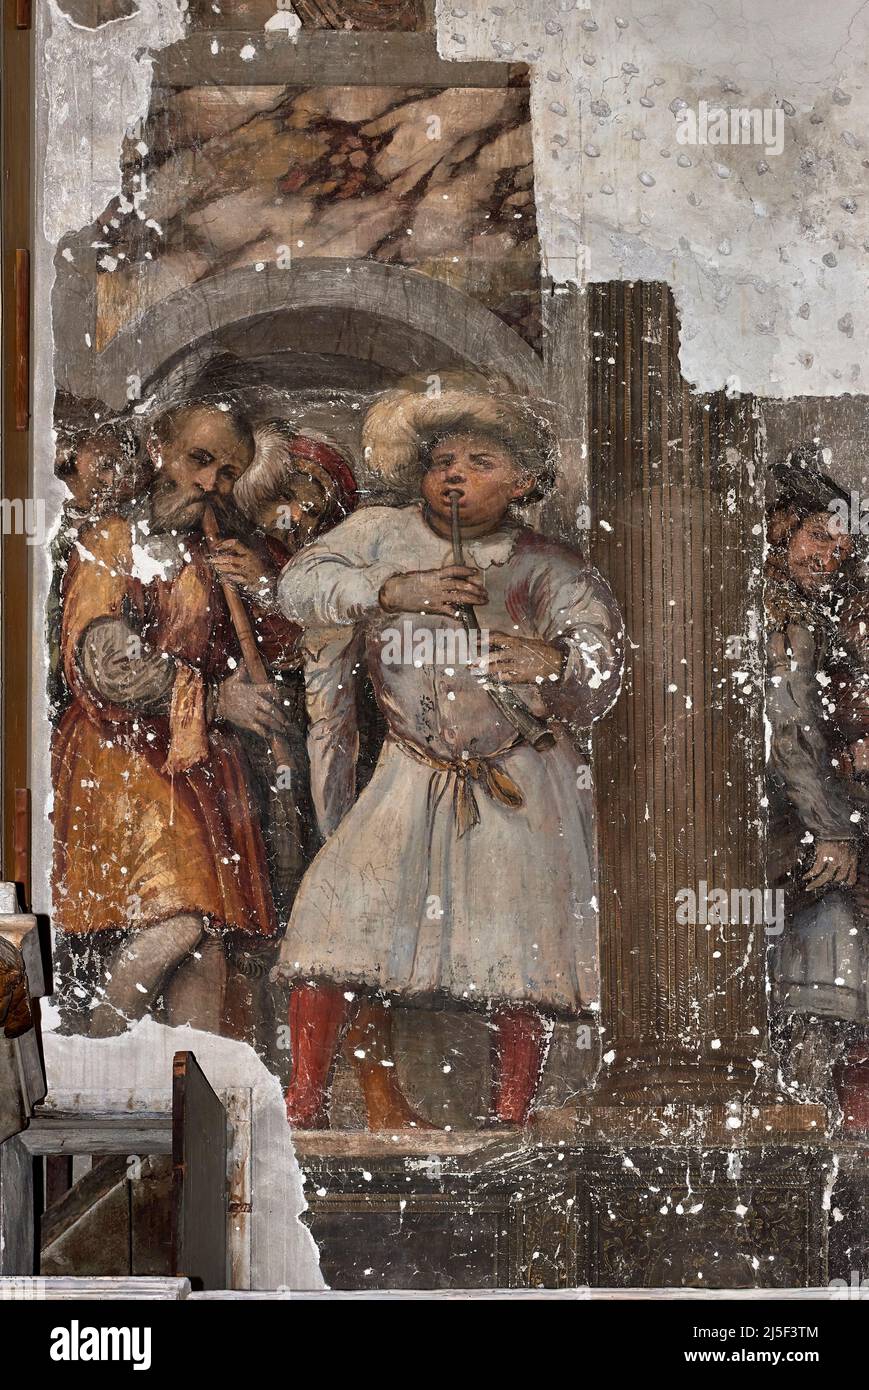 Corteo di musicanti - affresco - Girolamo Romanino - XVI secolo - Brescia, Italia, Duomo vecchio Stockfoto